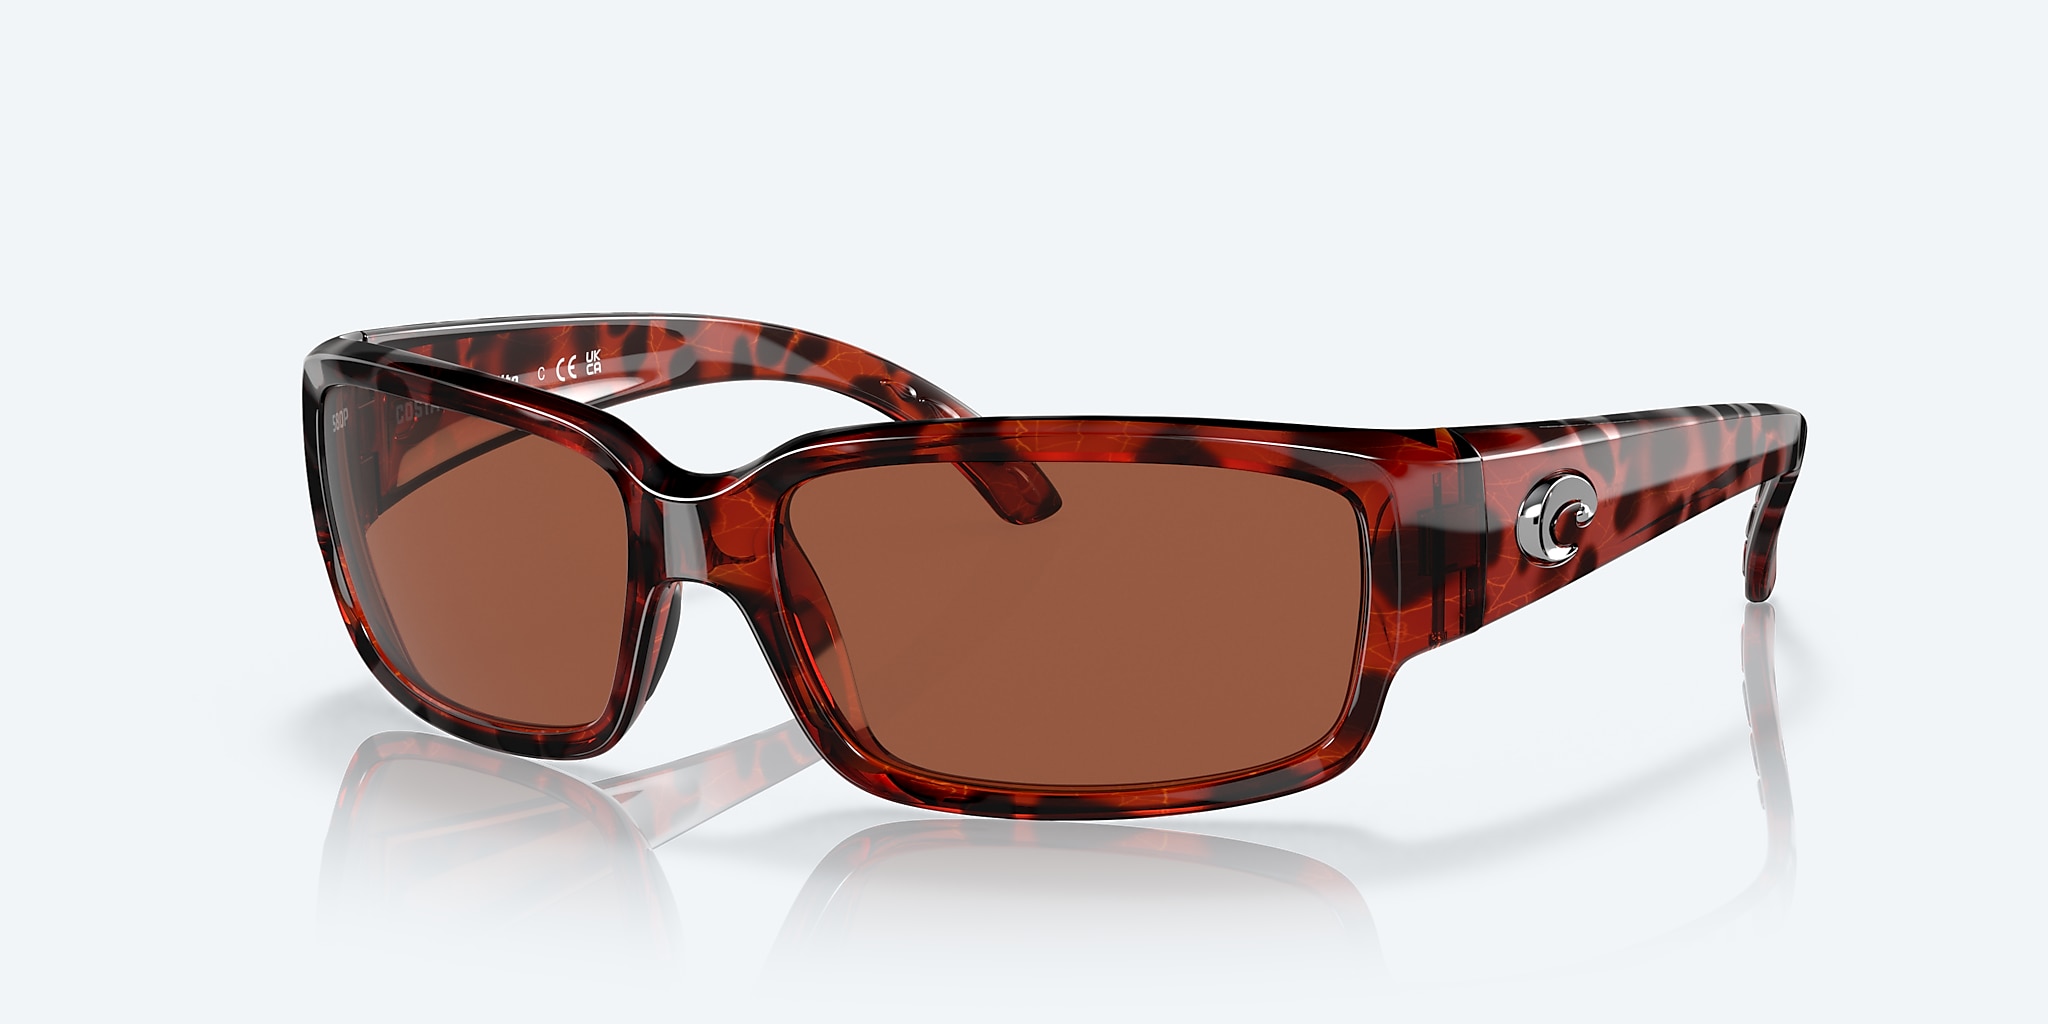 Caballito Polarized Sunglasses in Copper